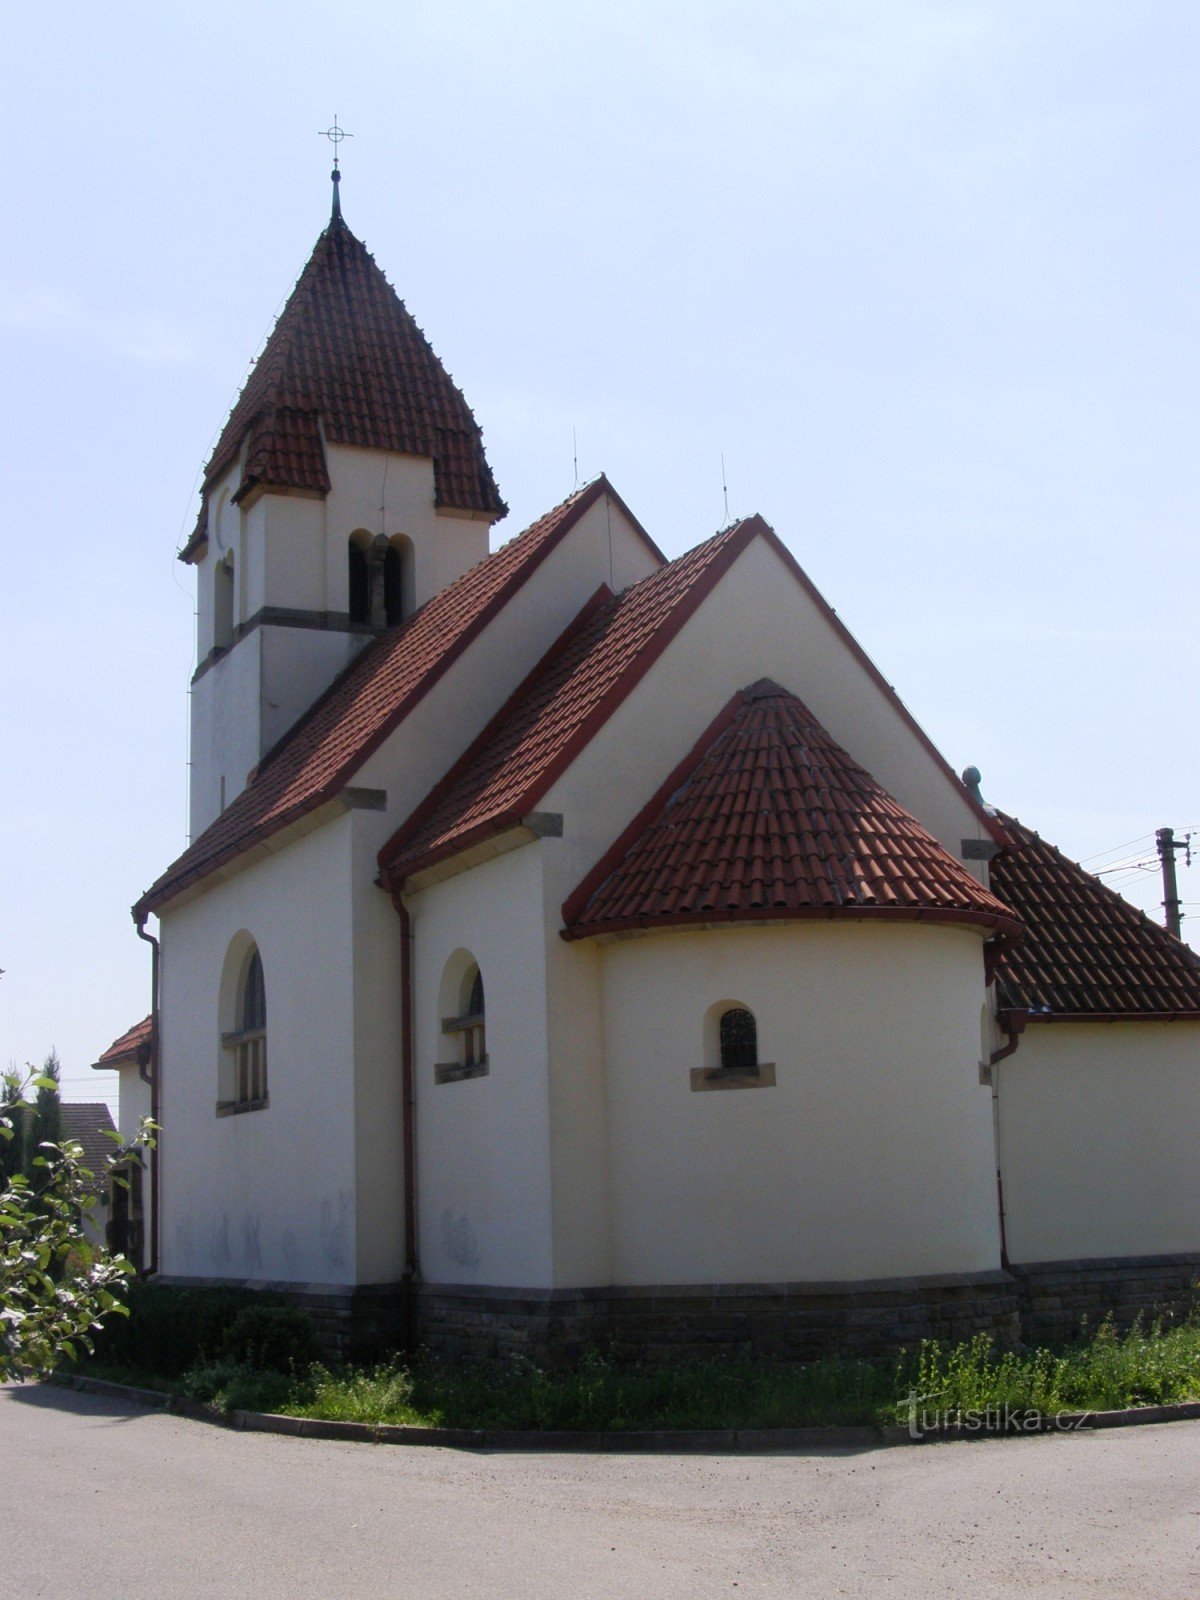 Ostroměř - Holy Trinity Chapel